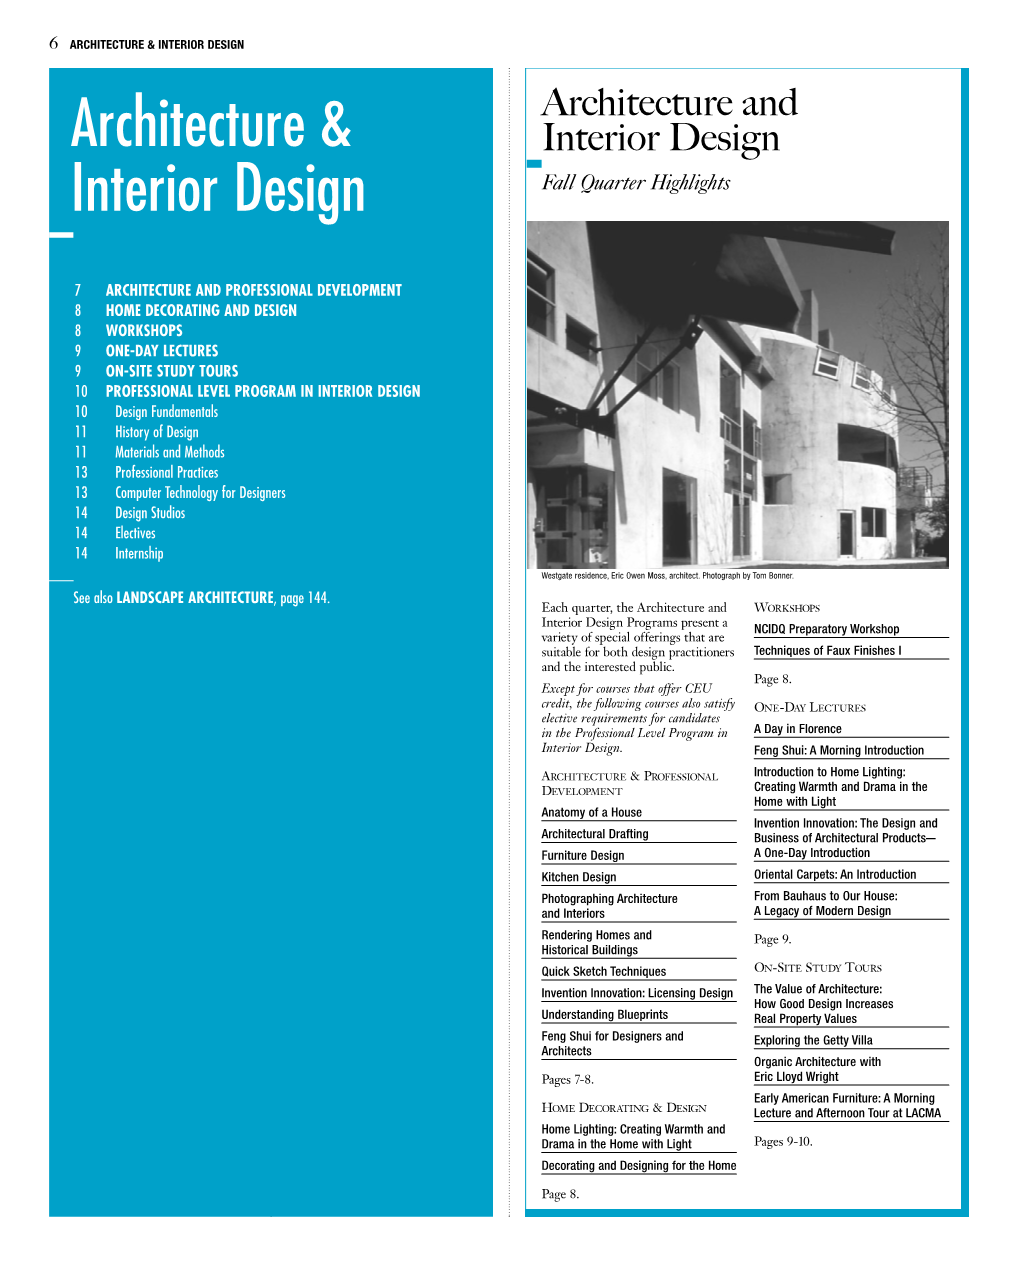 Architecture & Interior Design